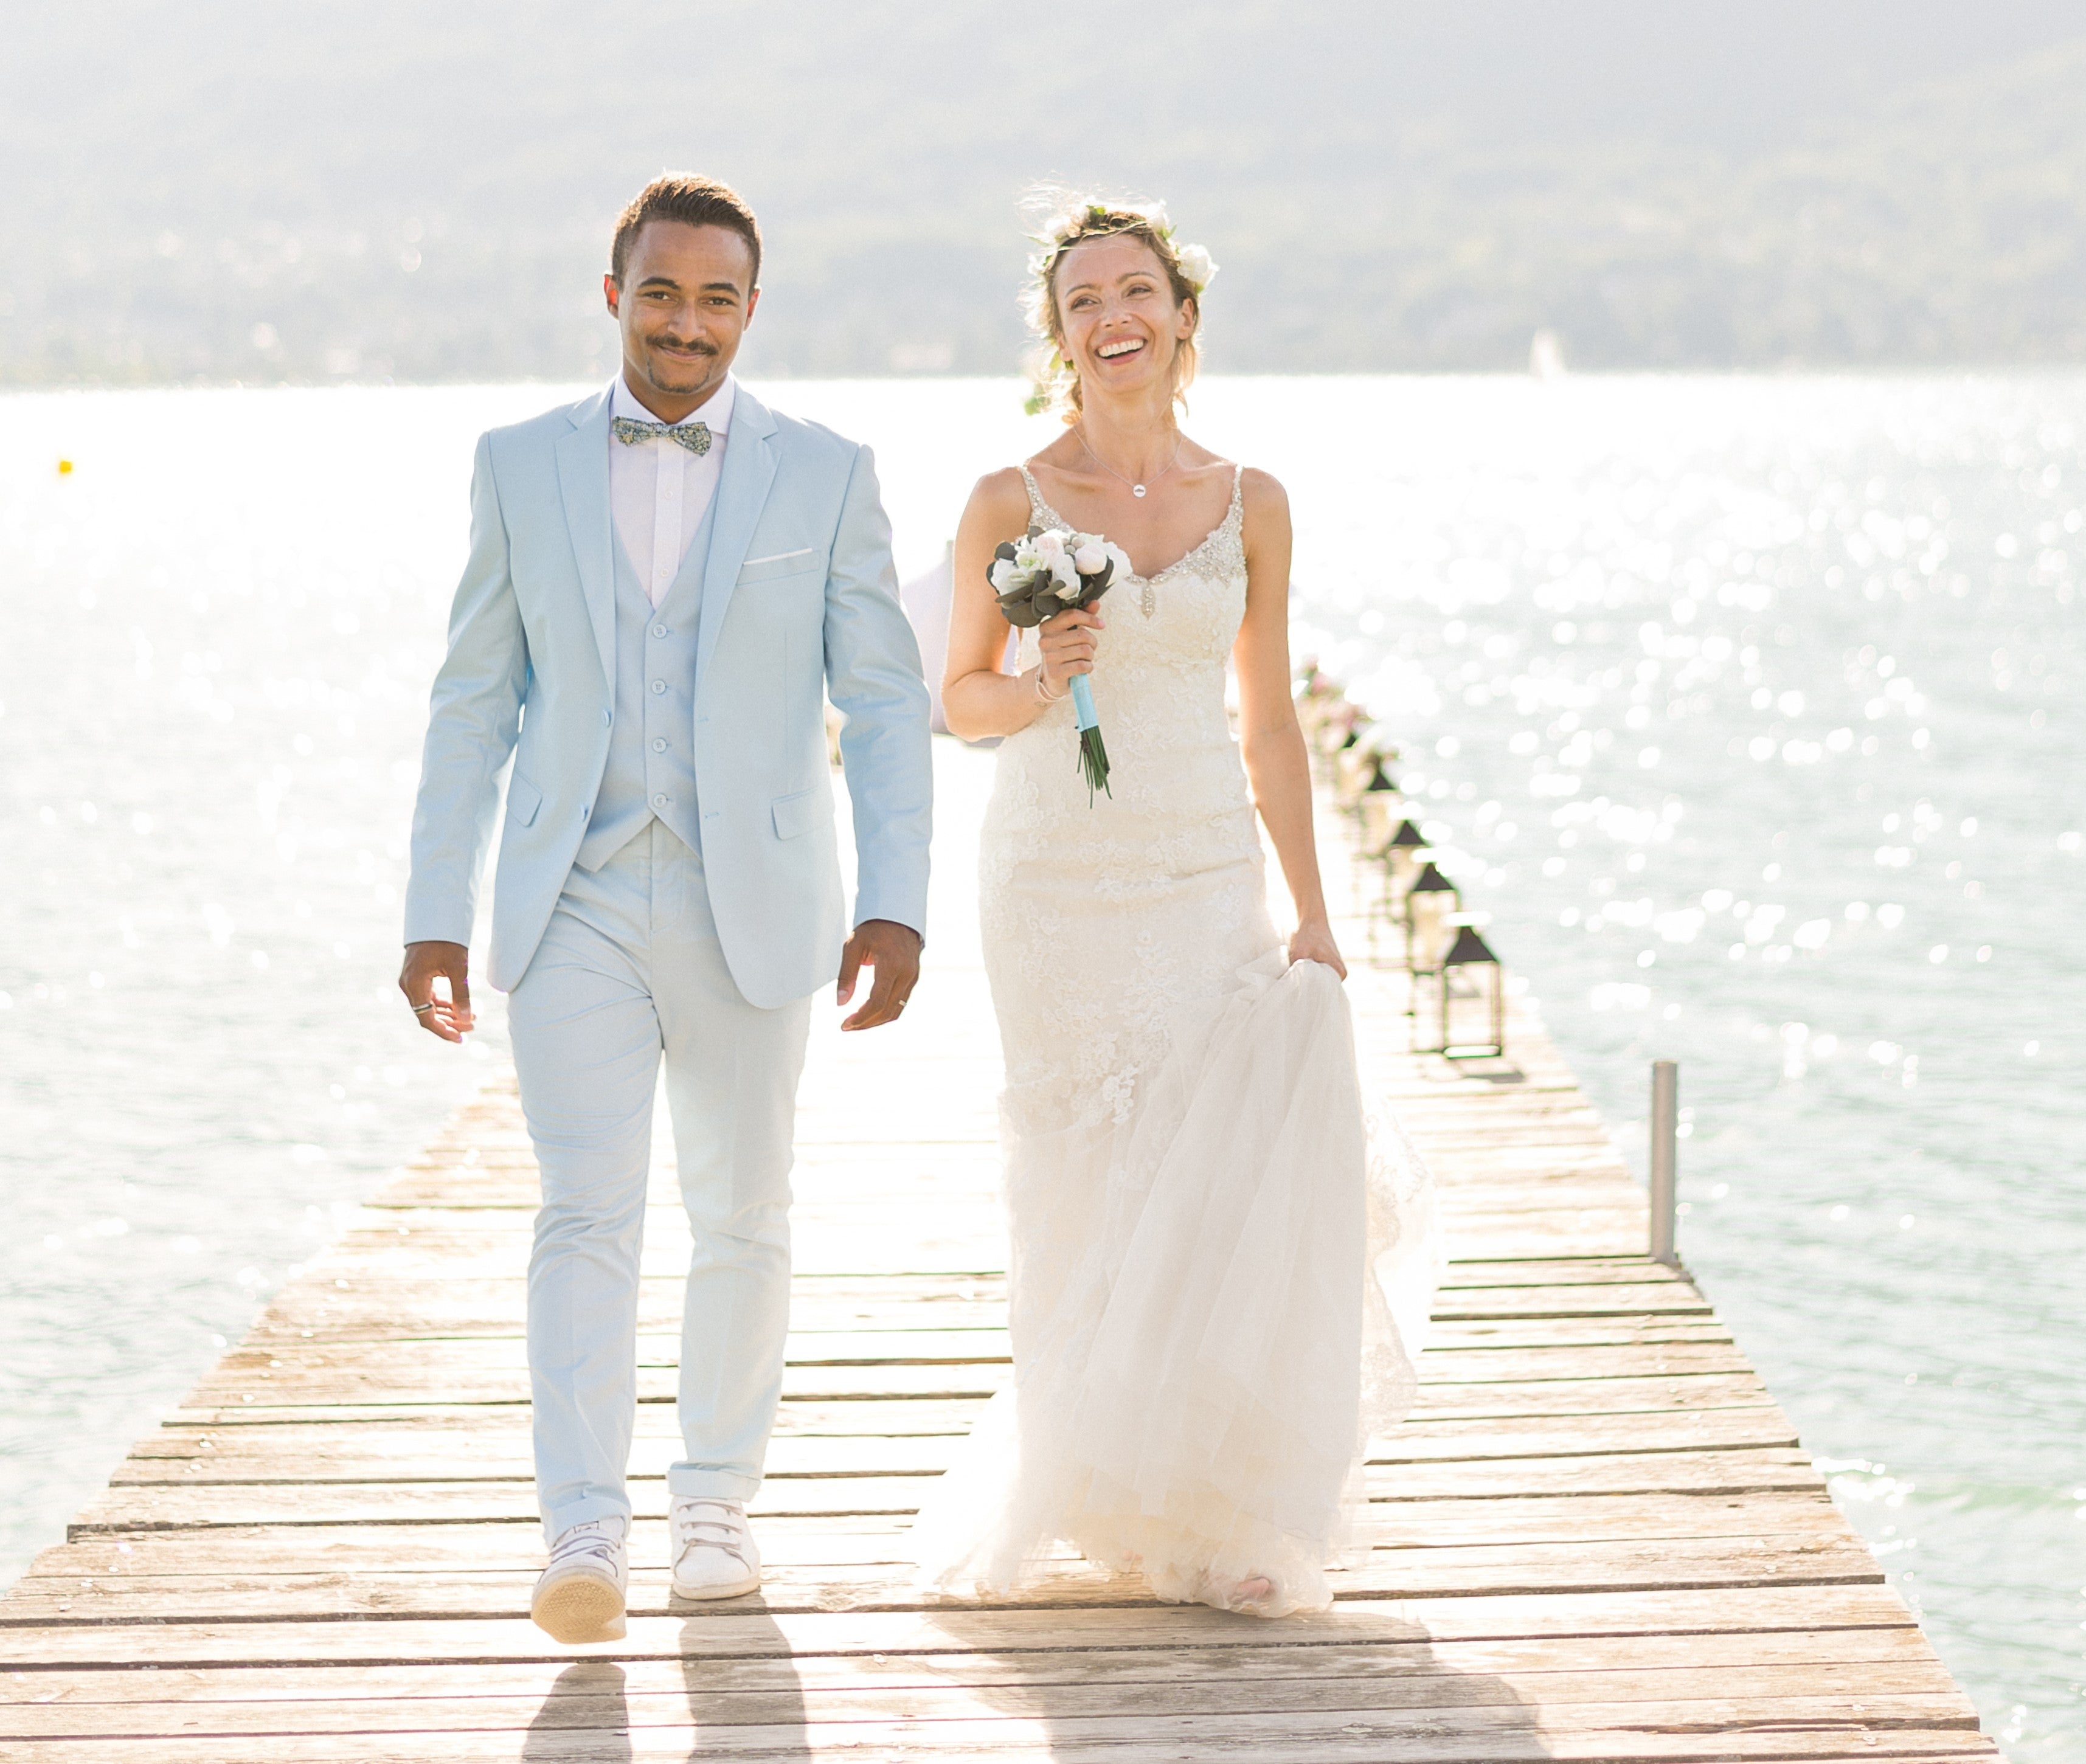 Quelle couleur de costume choisir pour son mariage? | Sweet Tailor Conseils  pour votre tenue de mariage blog